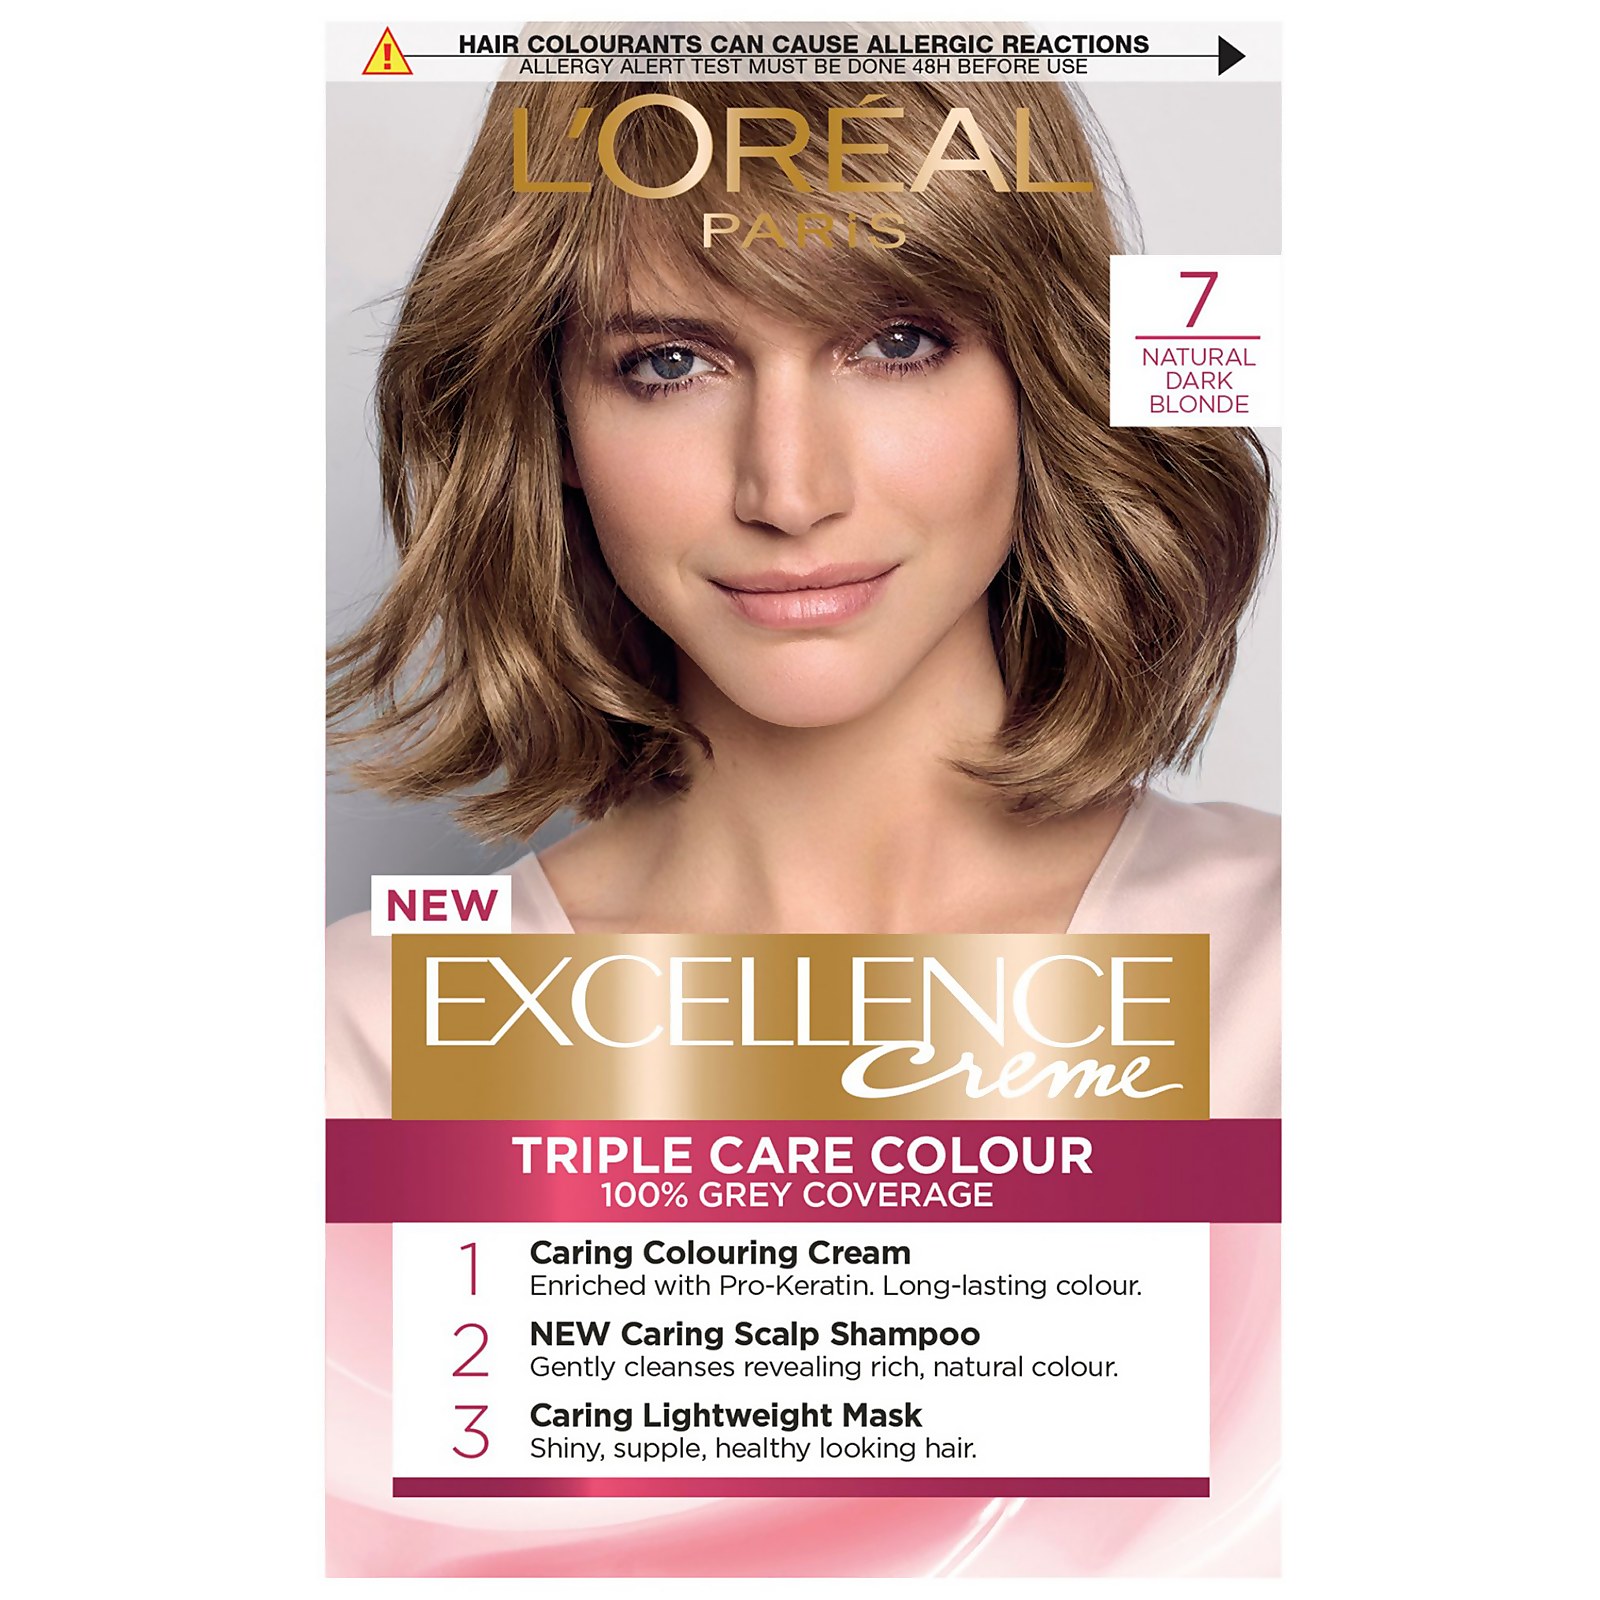 L'Oréal Paris Excellence Crème Permanent Hair Dye (Various Shades) - 7 Natural Dark Blonde